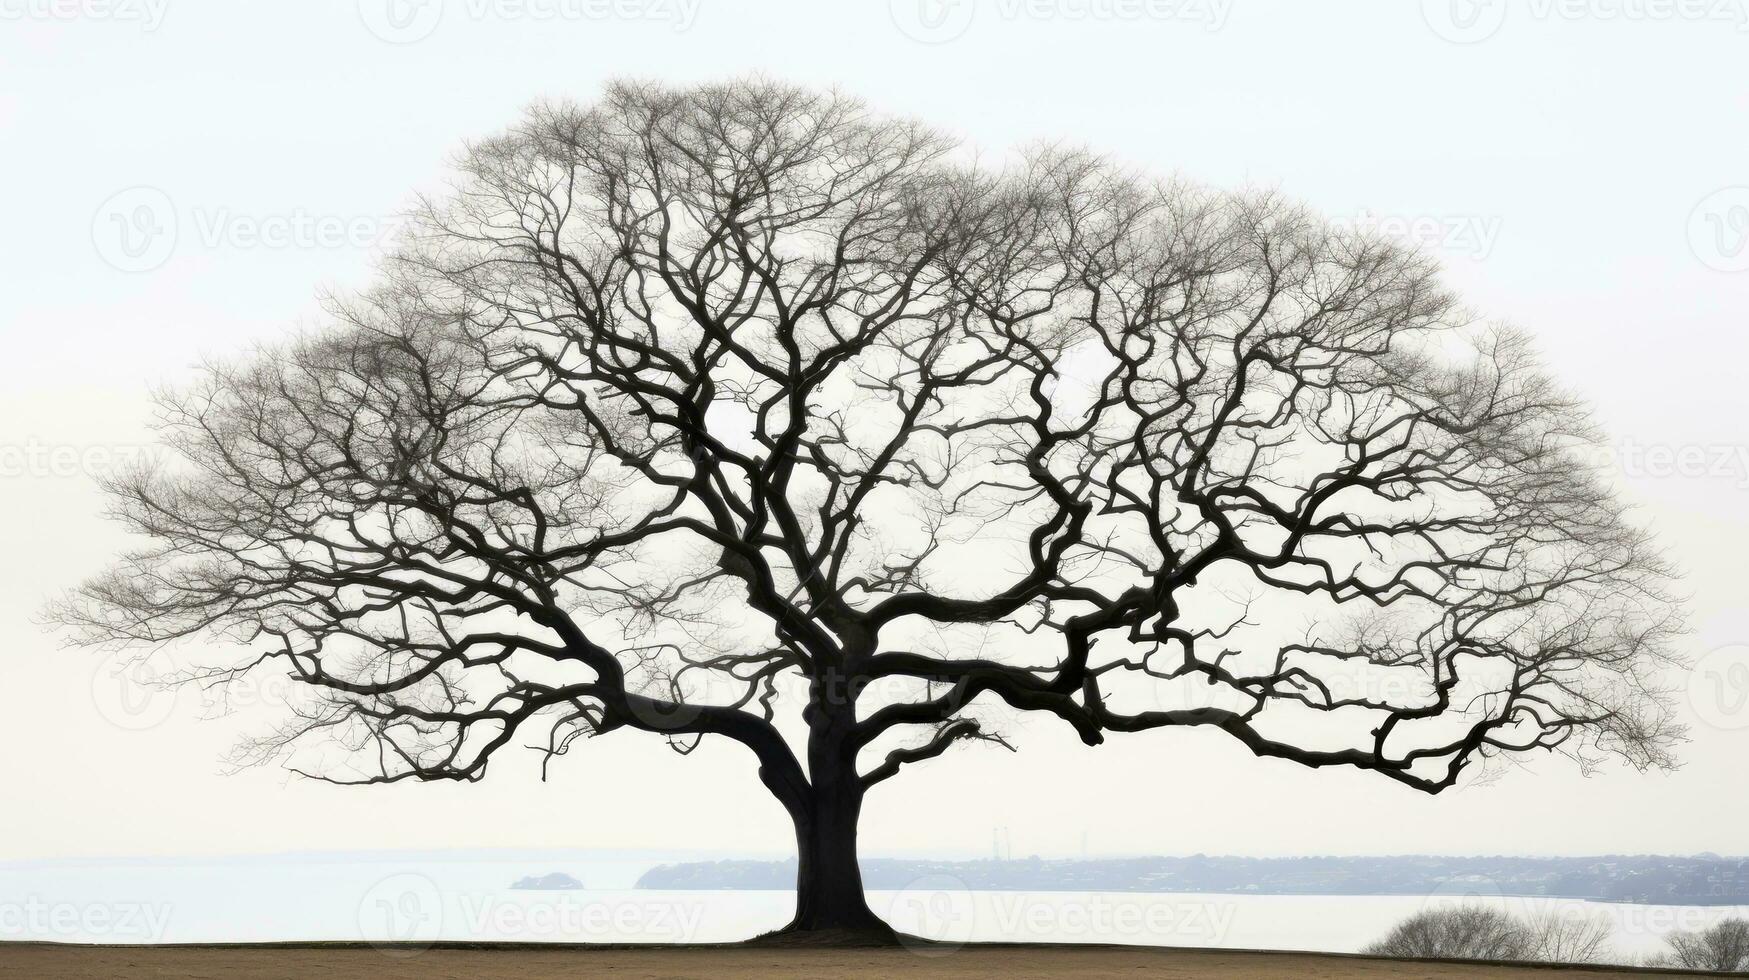 invierno s día en essex silueta de un desnudo roble árbol foto